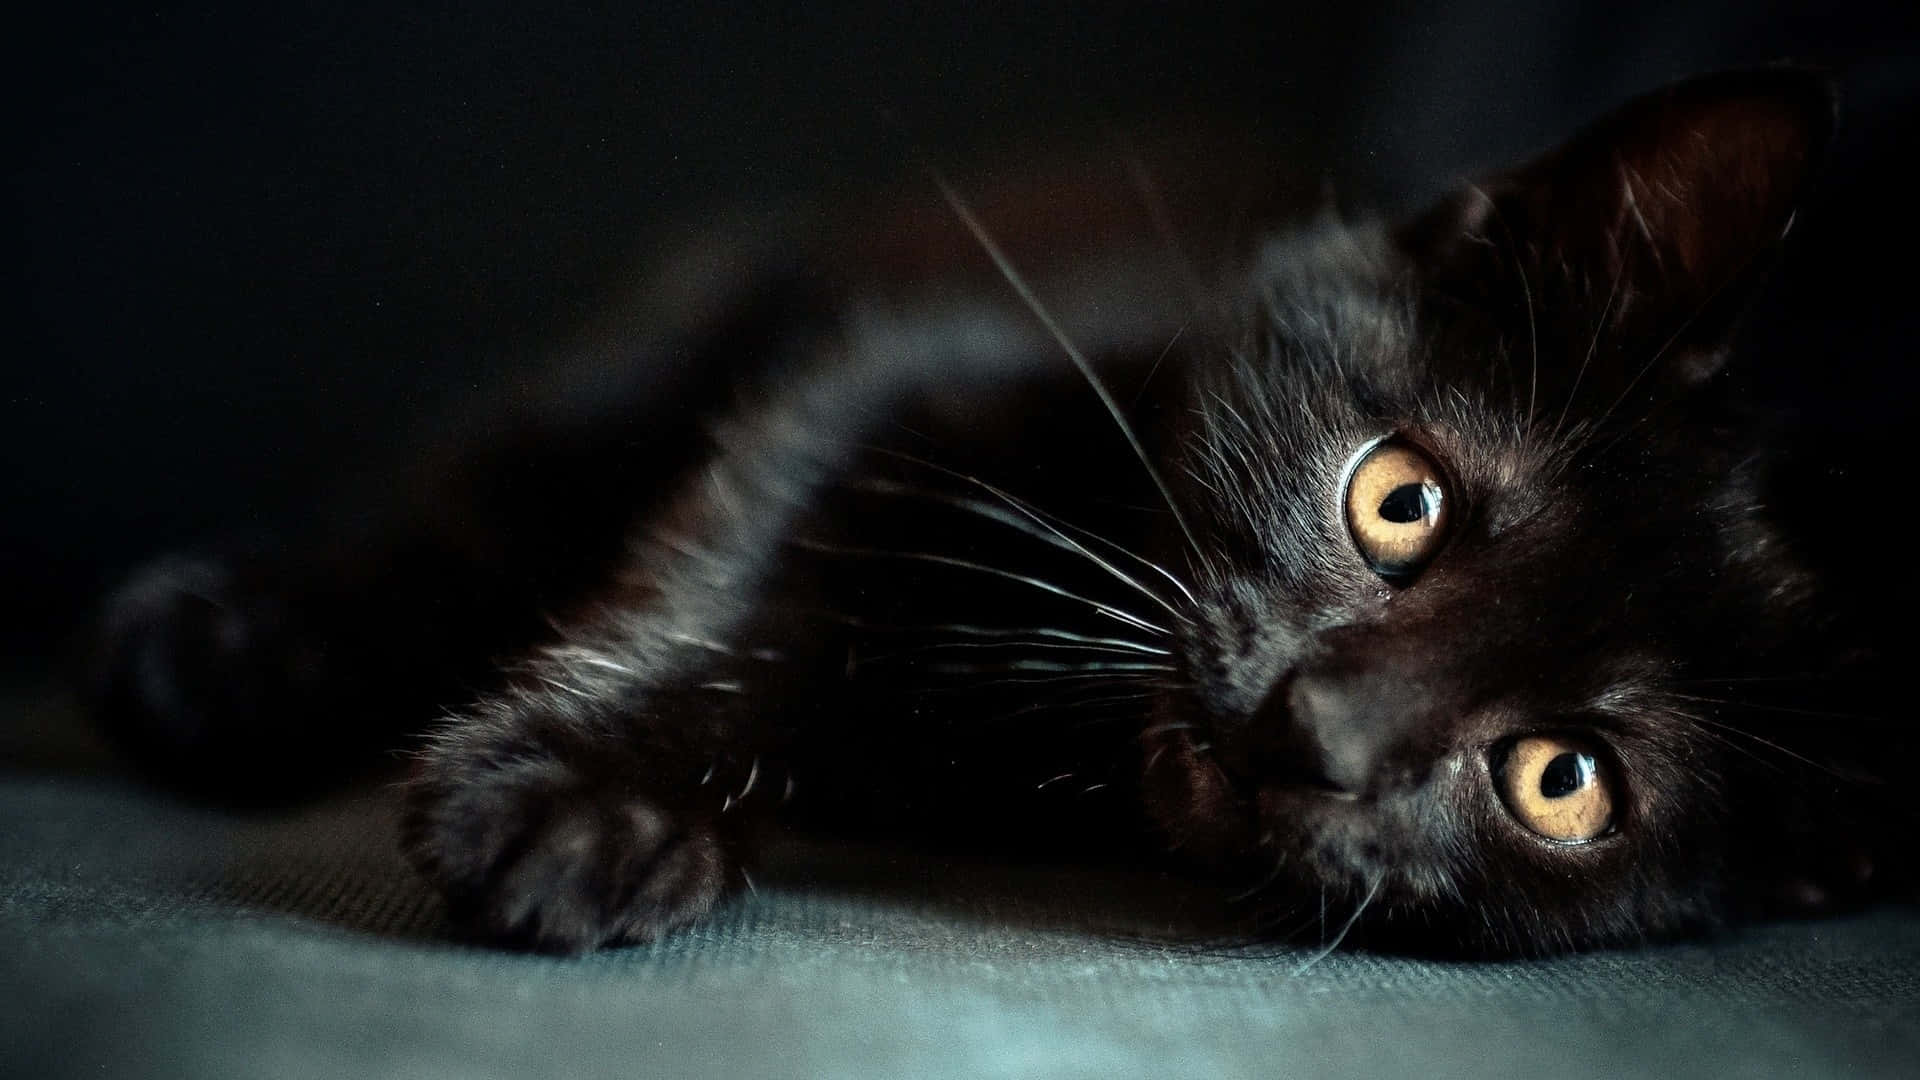 Dark Cute Black Cat Lying